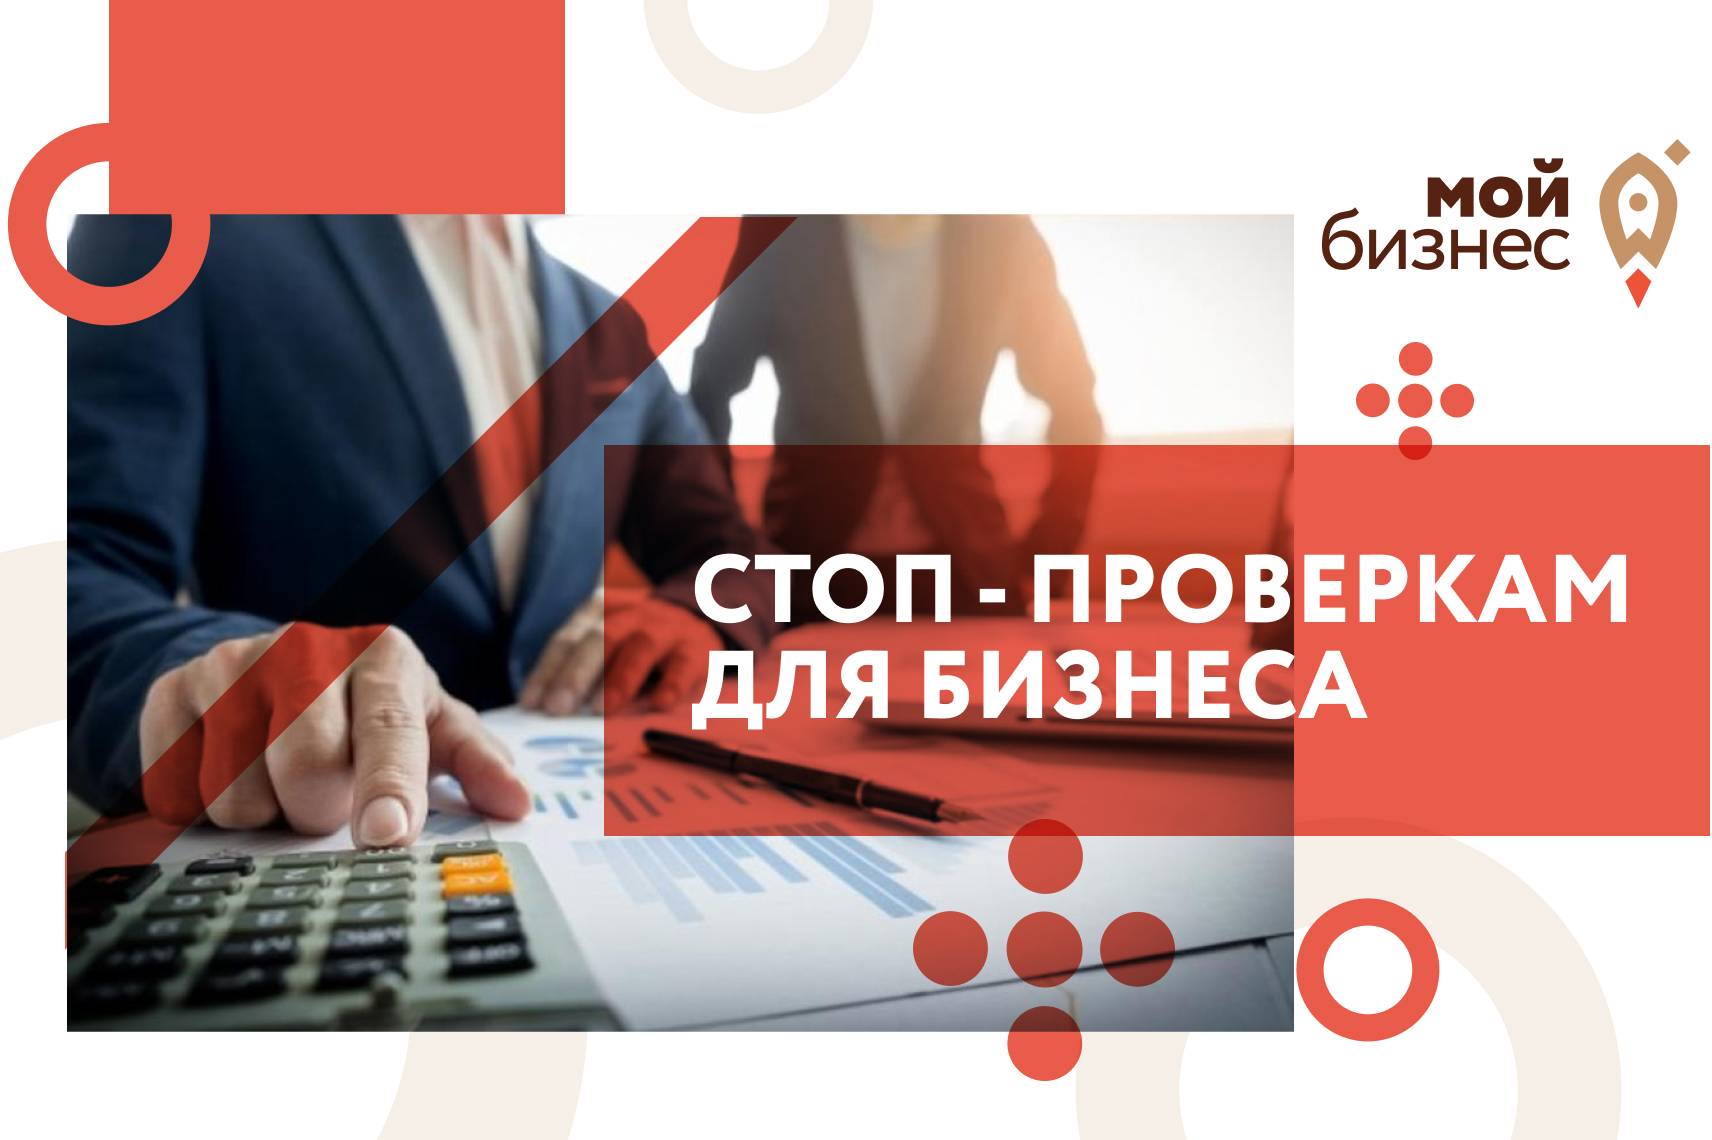 В России отменили выездные и налоговые проверки бизнеса до 1 мая